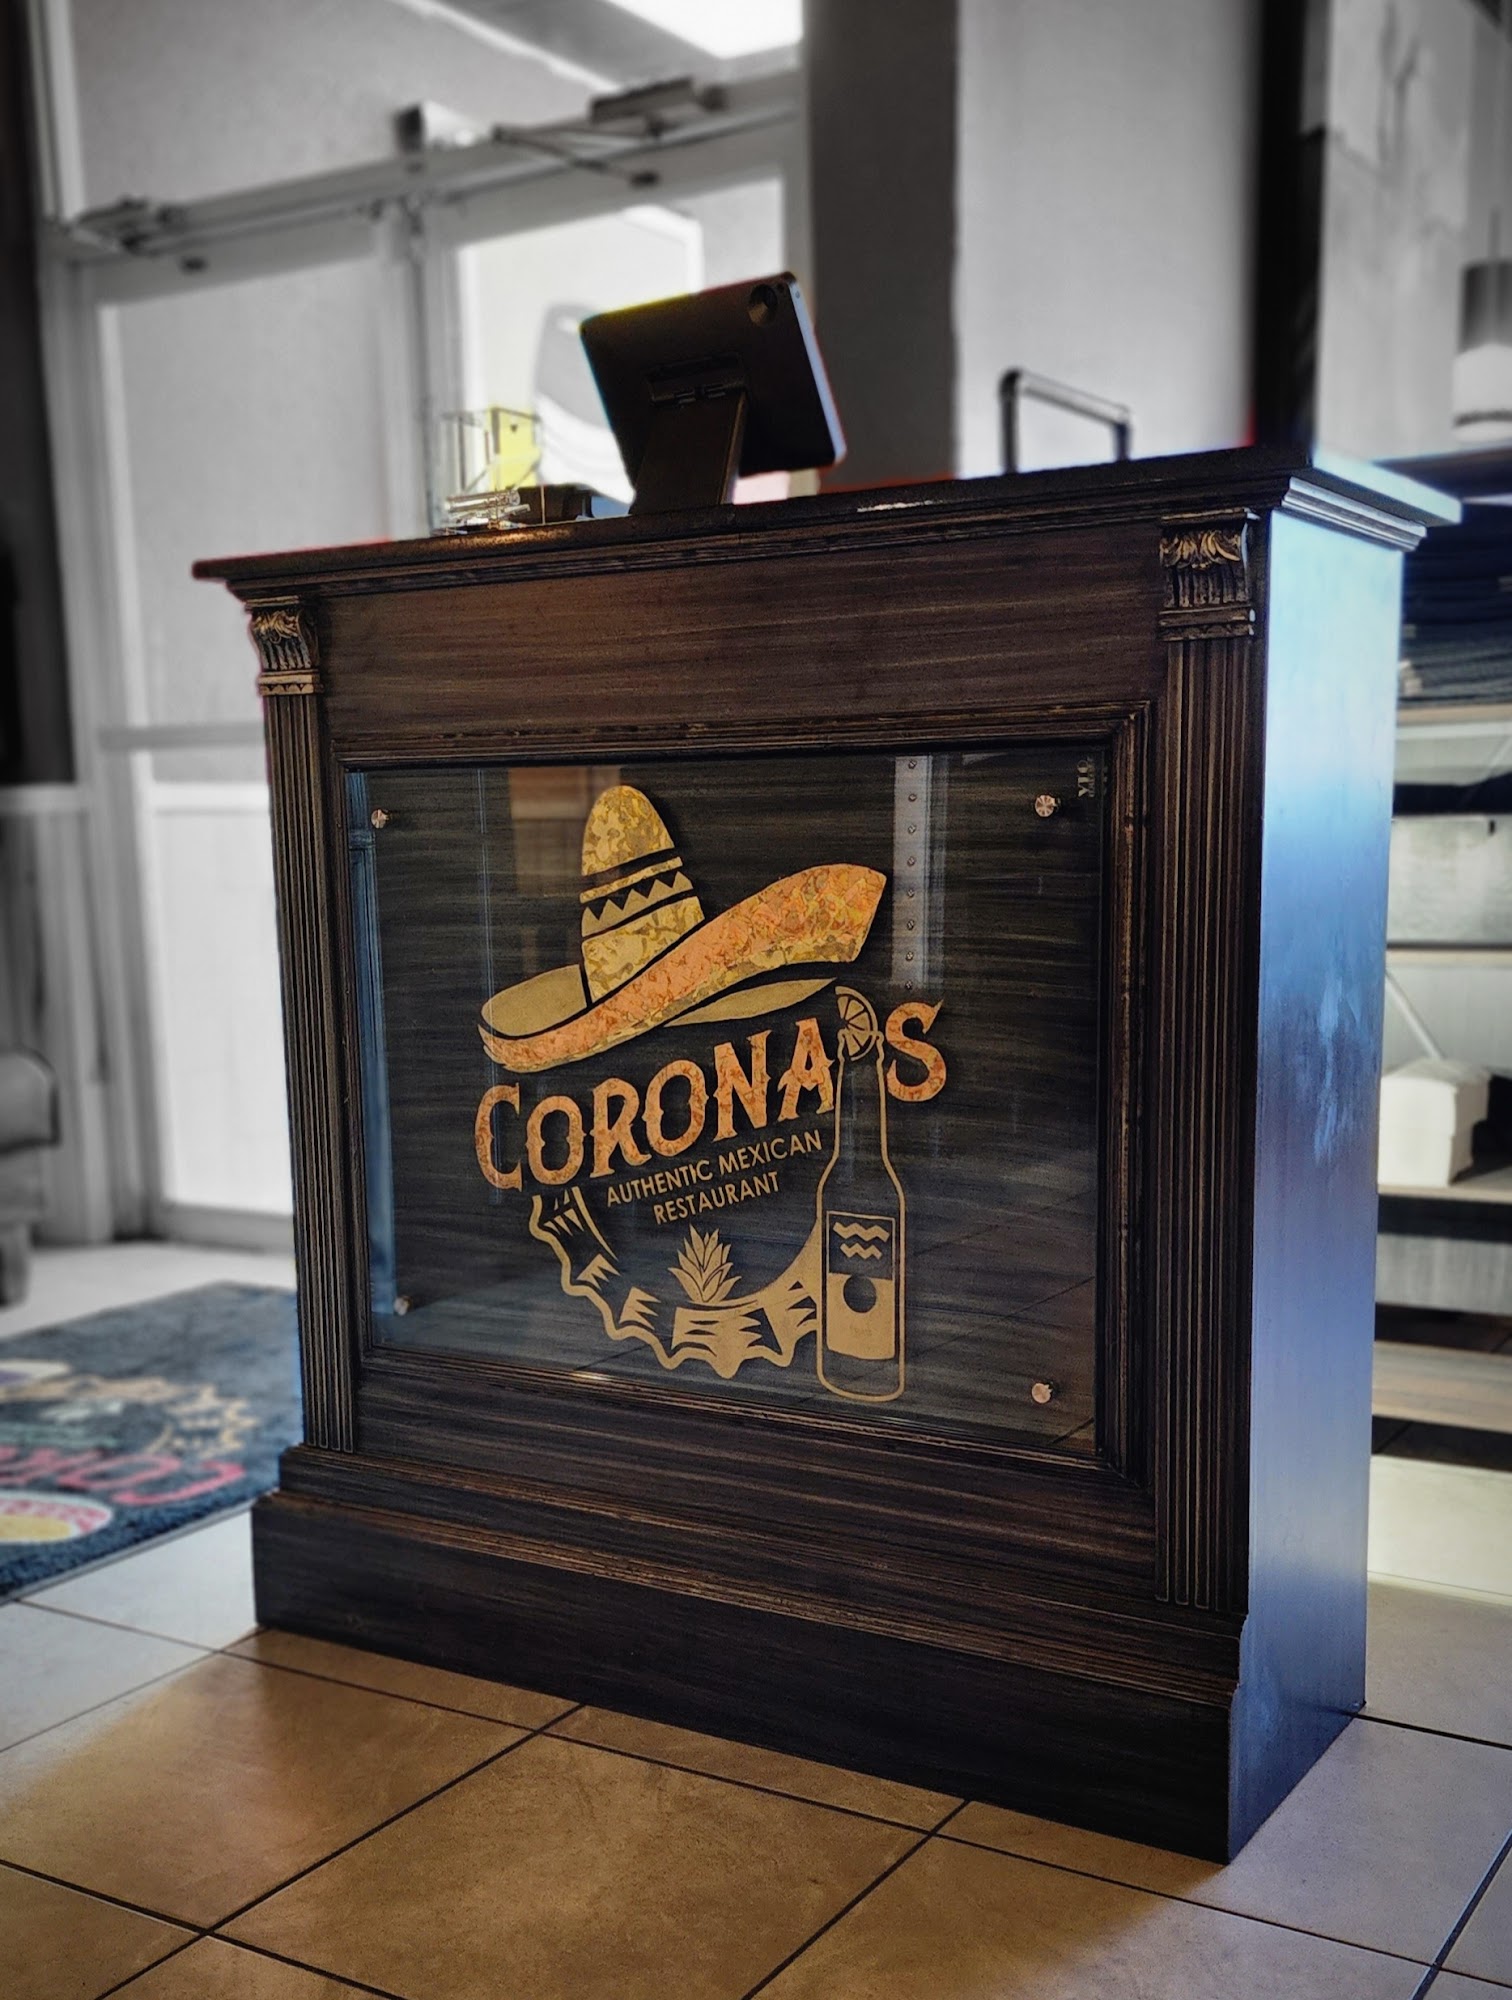 Corona's II Authentic Mexican Restaurant